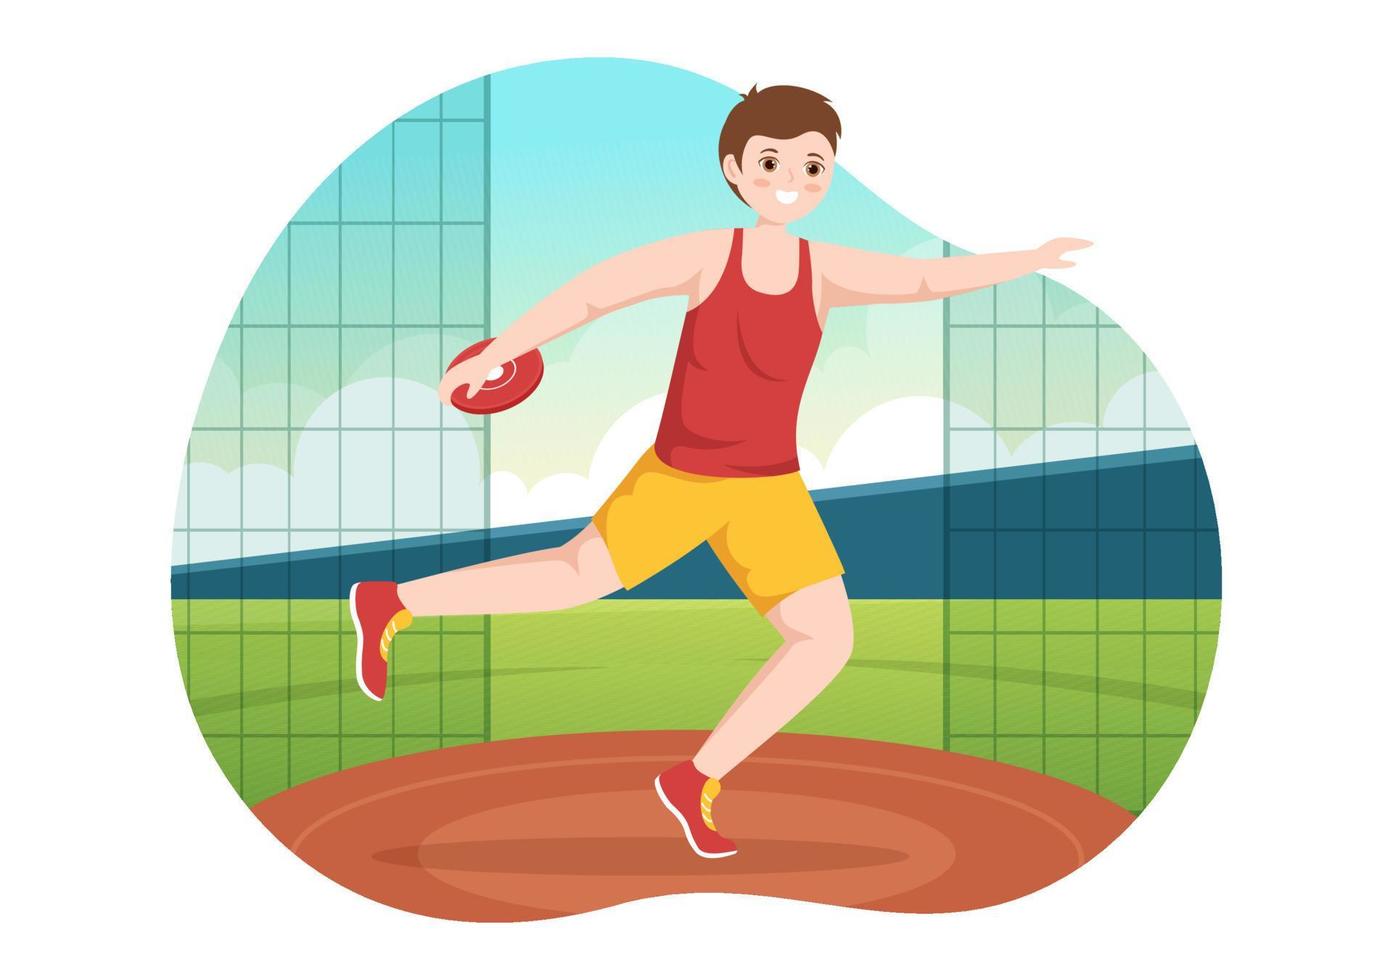 lanzamiento de disco jugando ilustración de atletismo con lanzar un plato de madera en plantillas dibujadas a mano de dibujos animados planos de campeonato deportivo vector